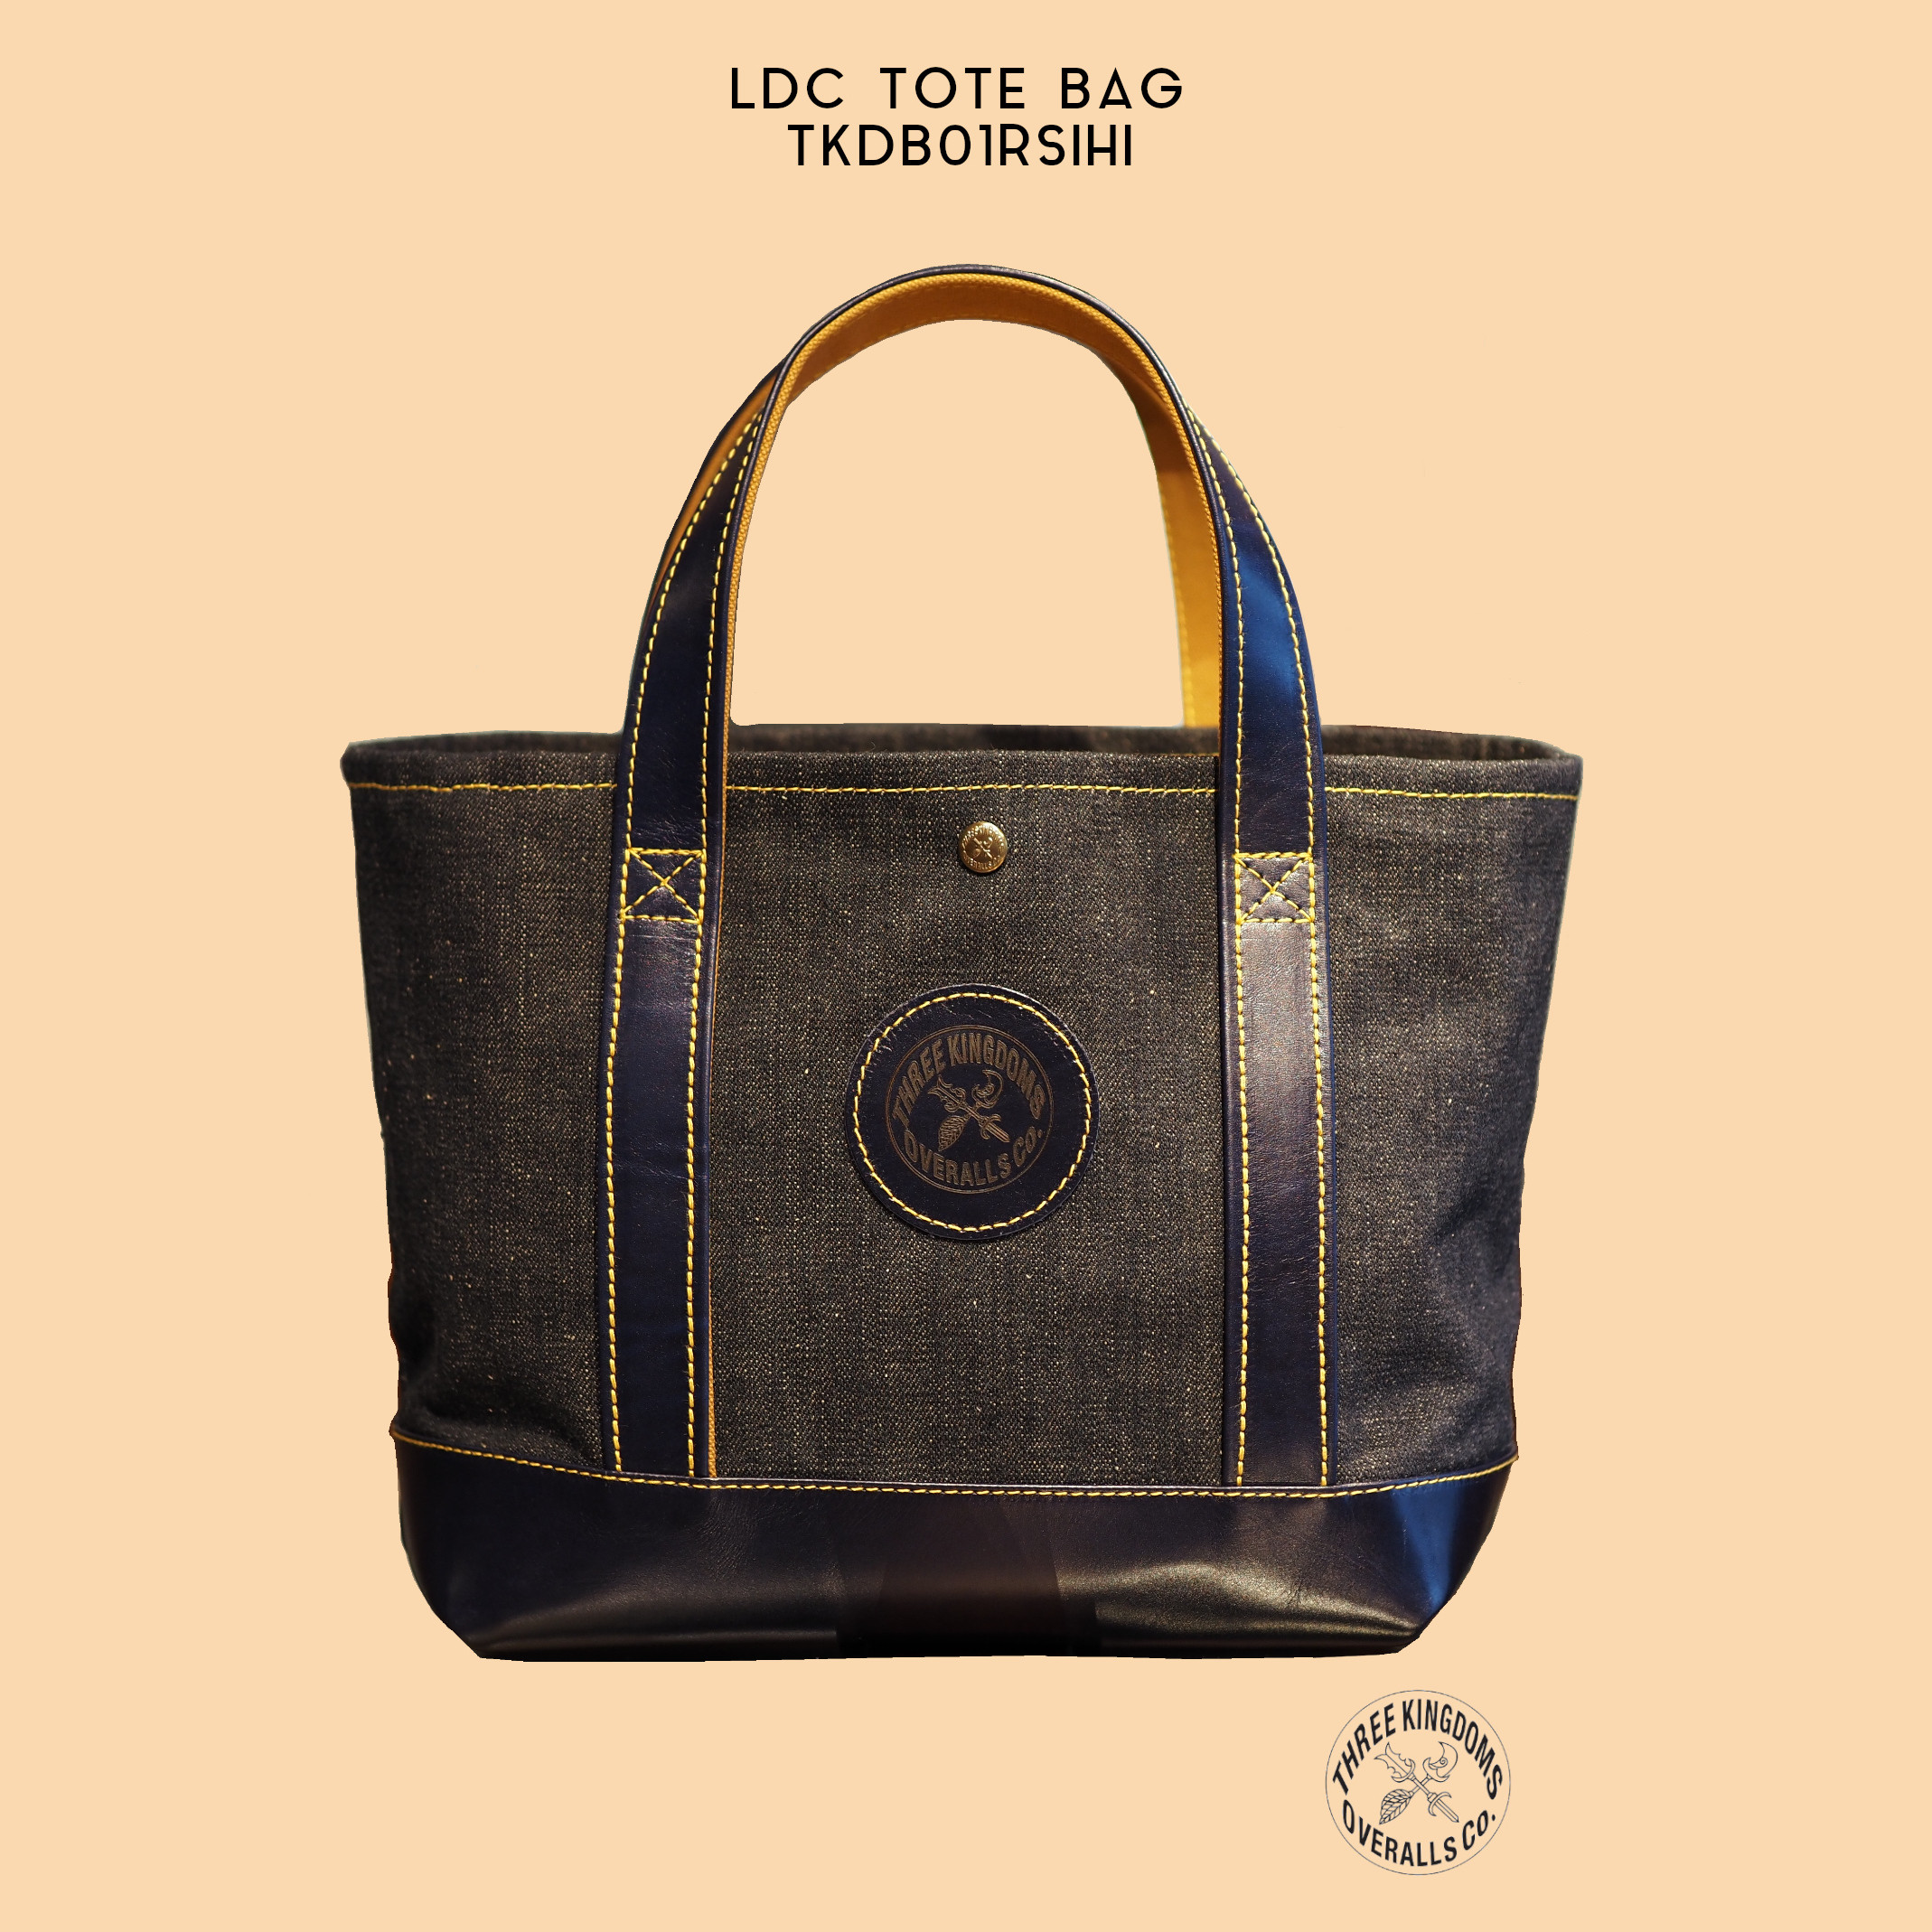 LDC Tote Bag TKDB01RSIHIは公式オンラインショップにて販売開始📣📣📣。